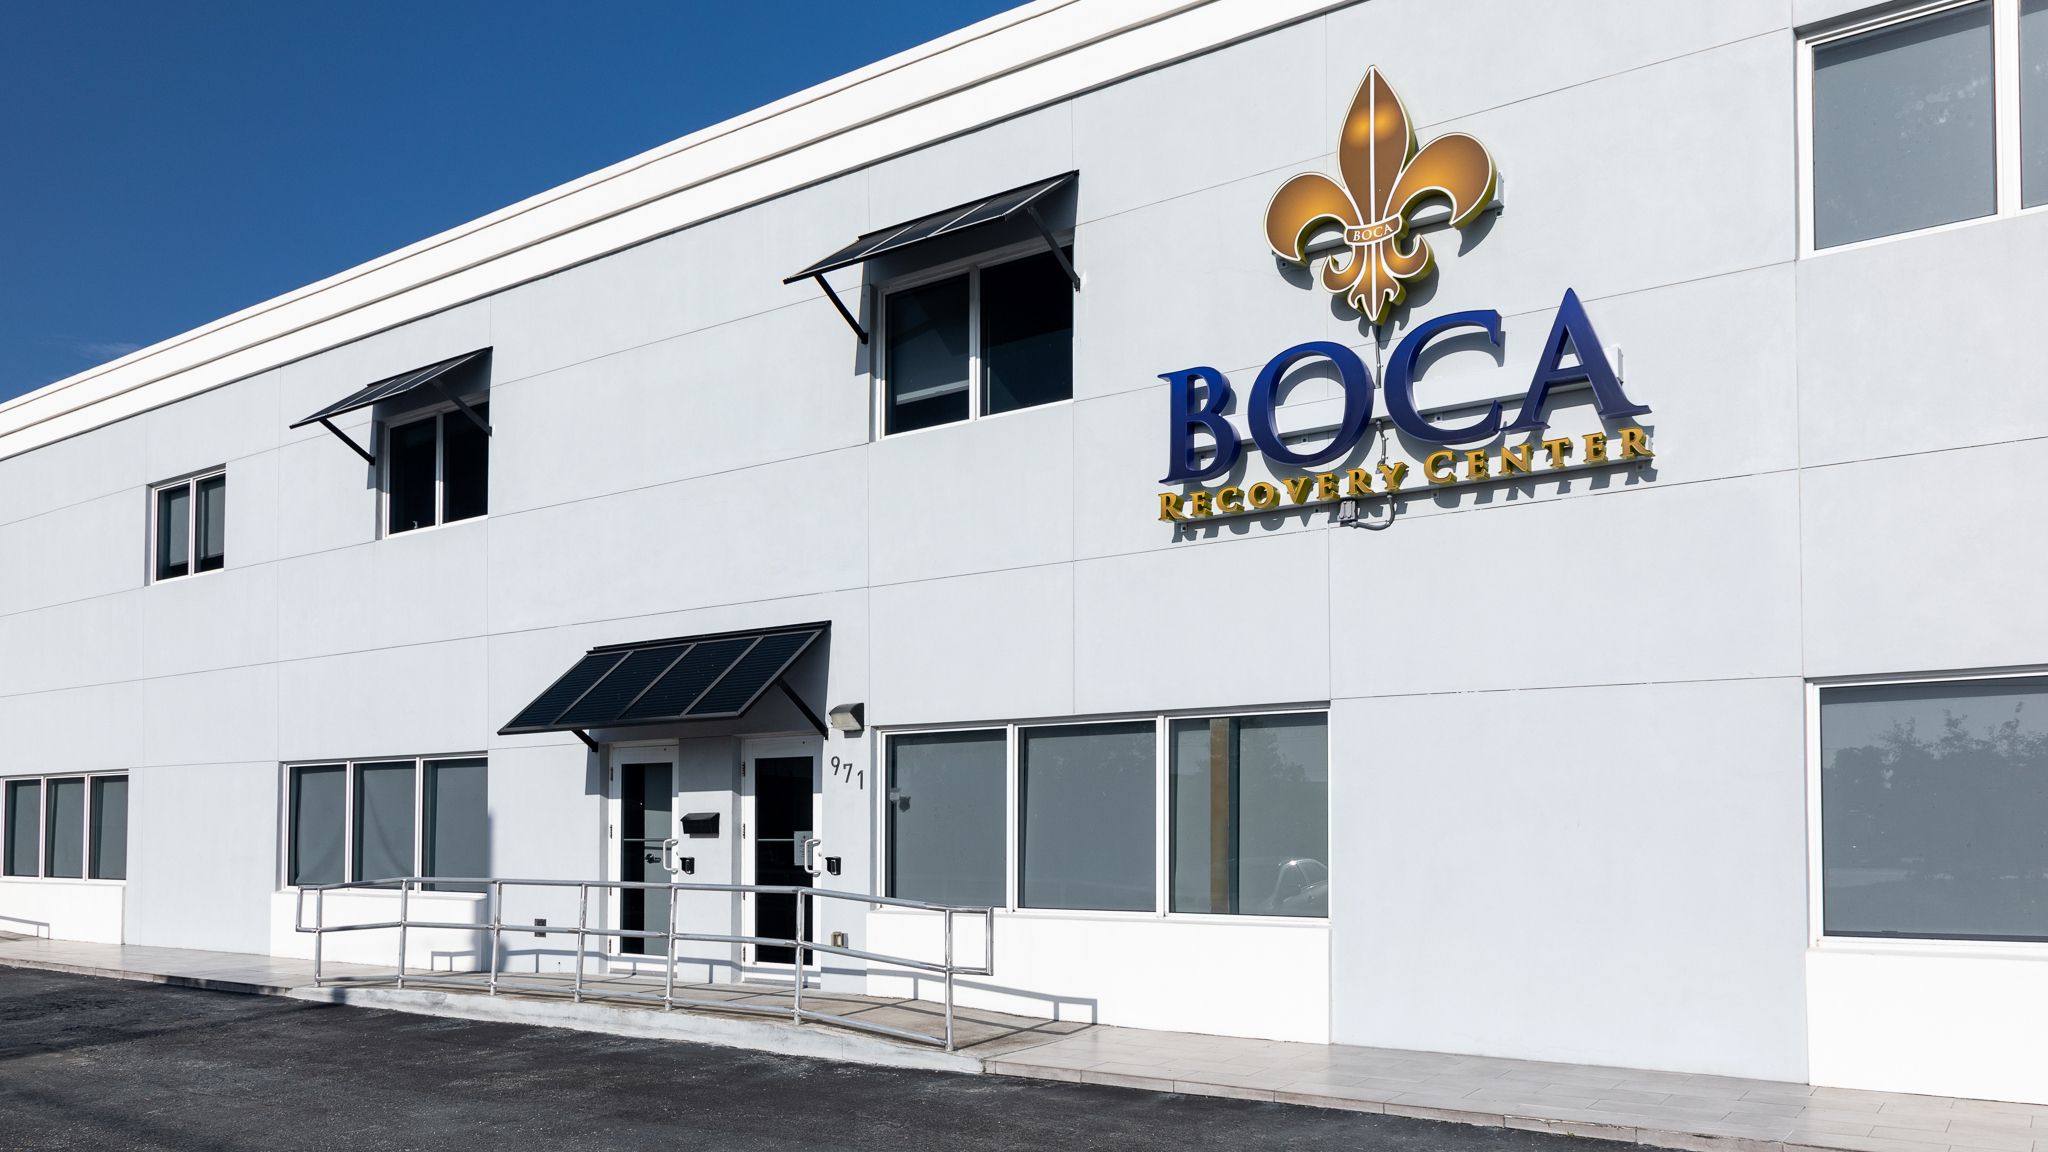 Boca Recovery Center